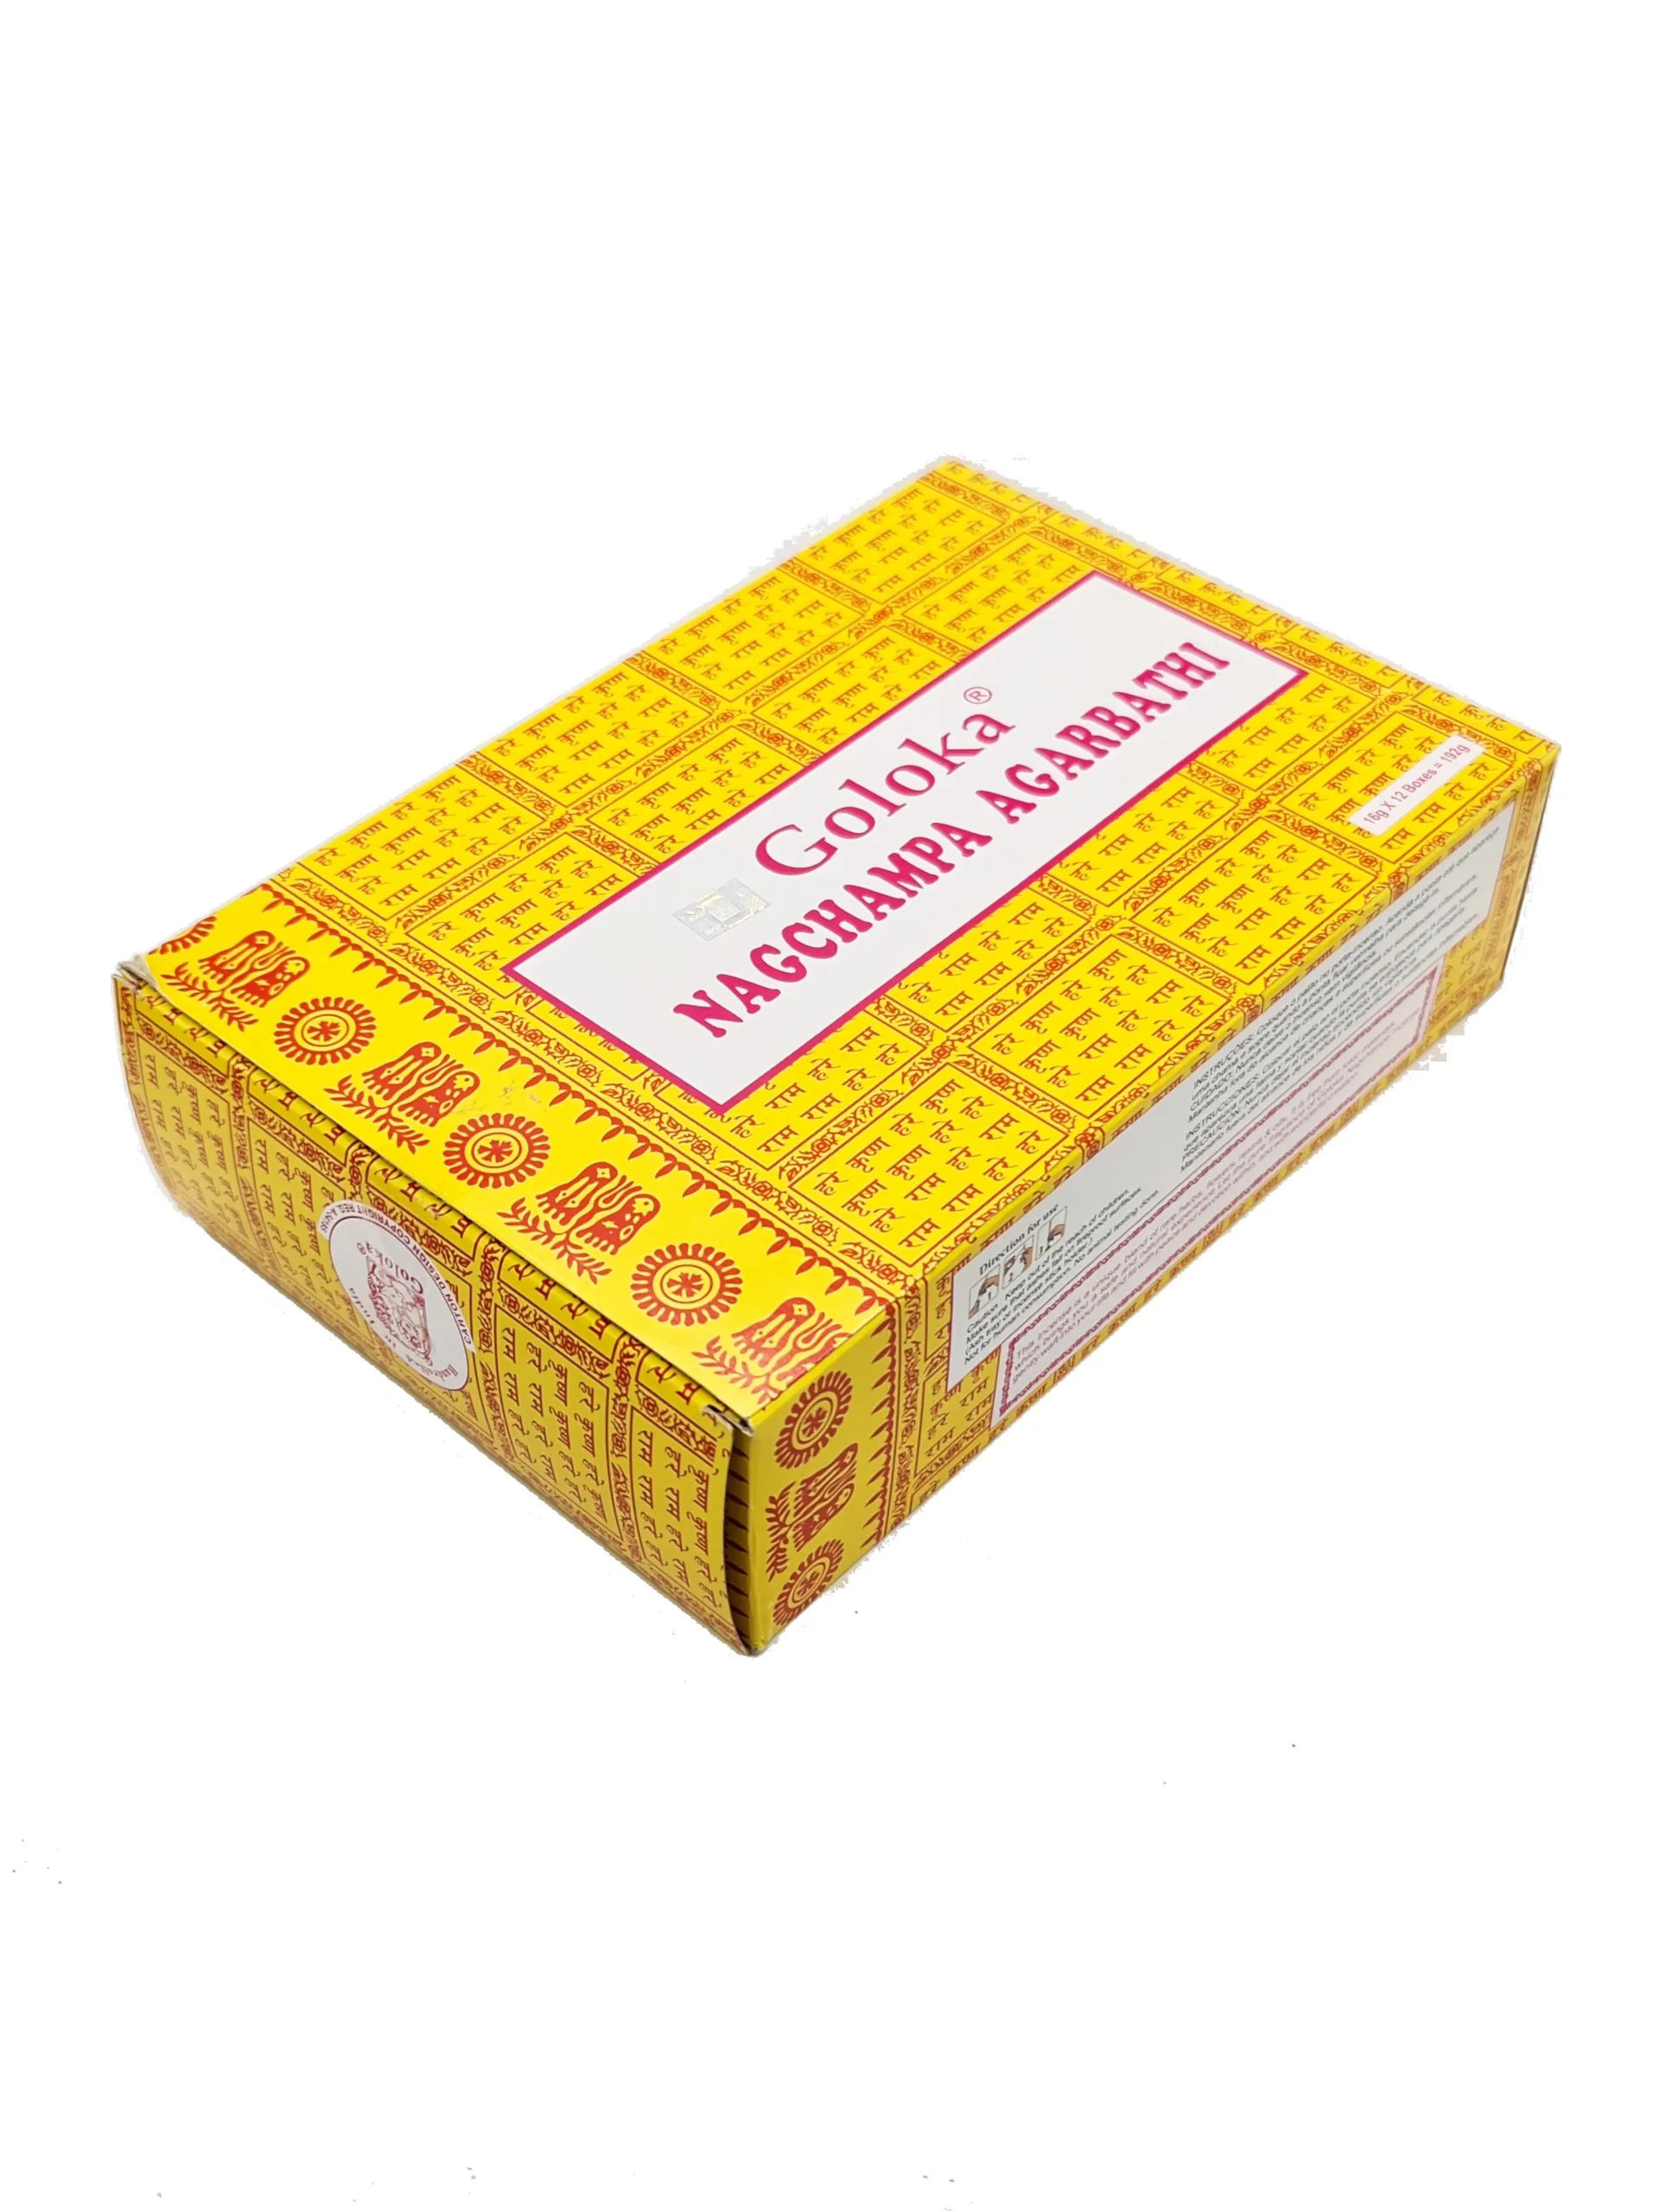 Paquete de 25 cajas de 8 gramos de la marca Goloka Nag Champa Agarbathi.